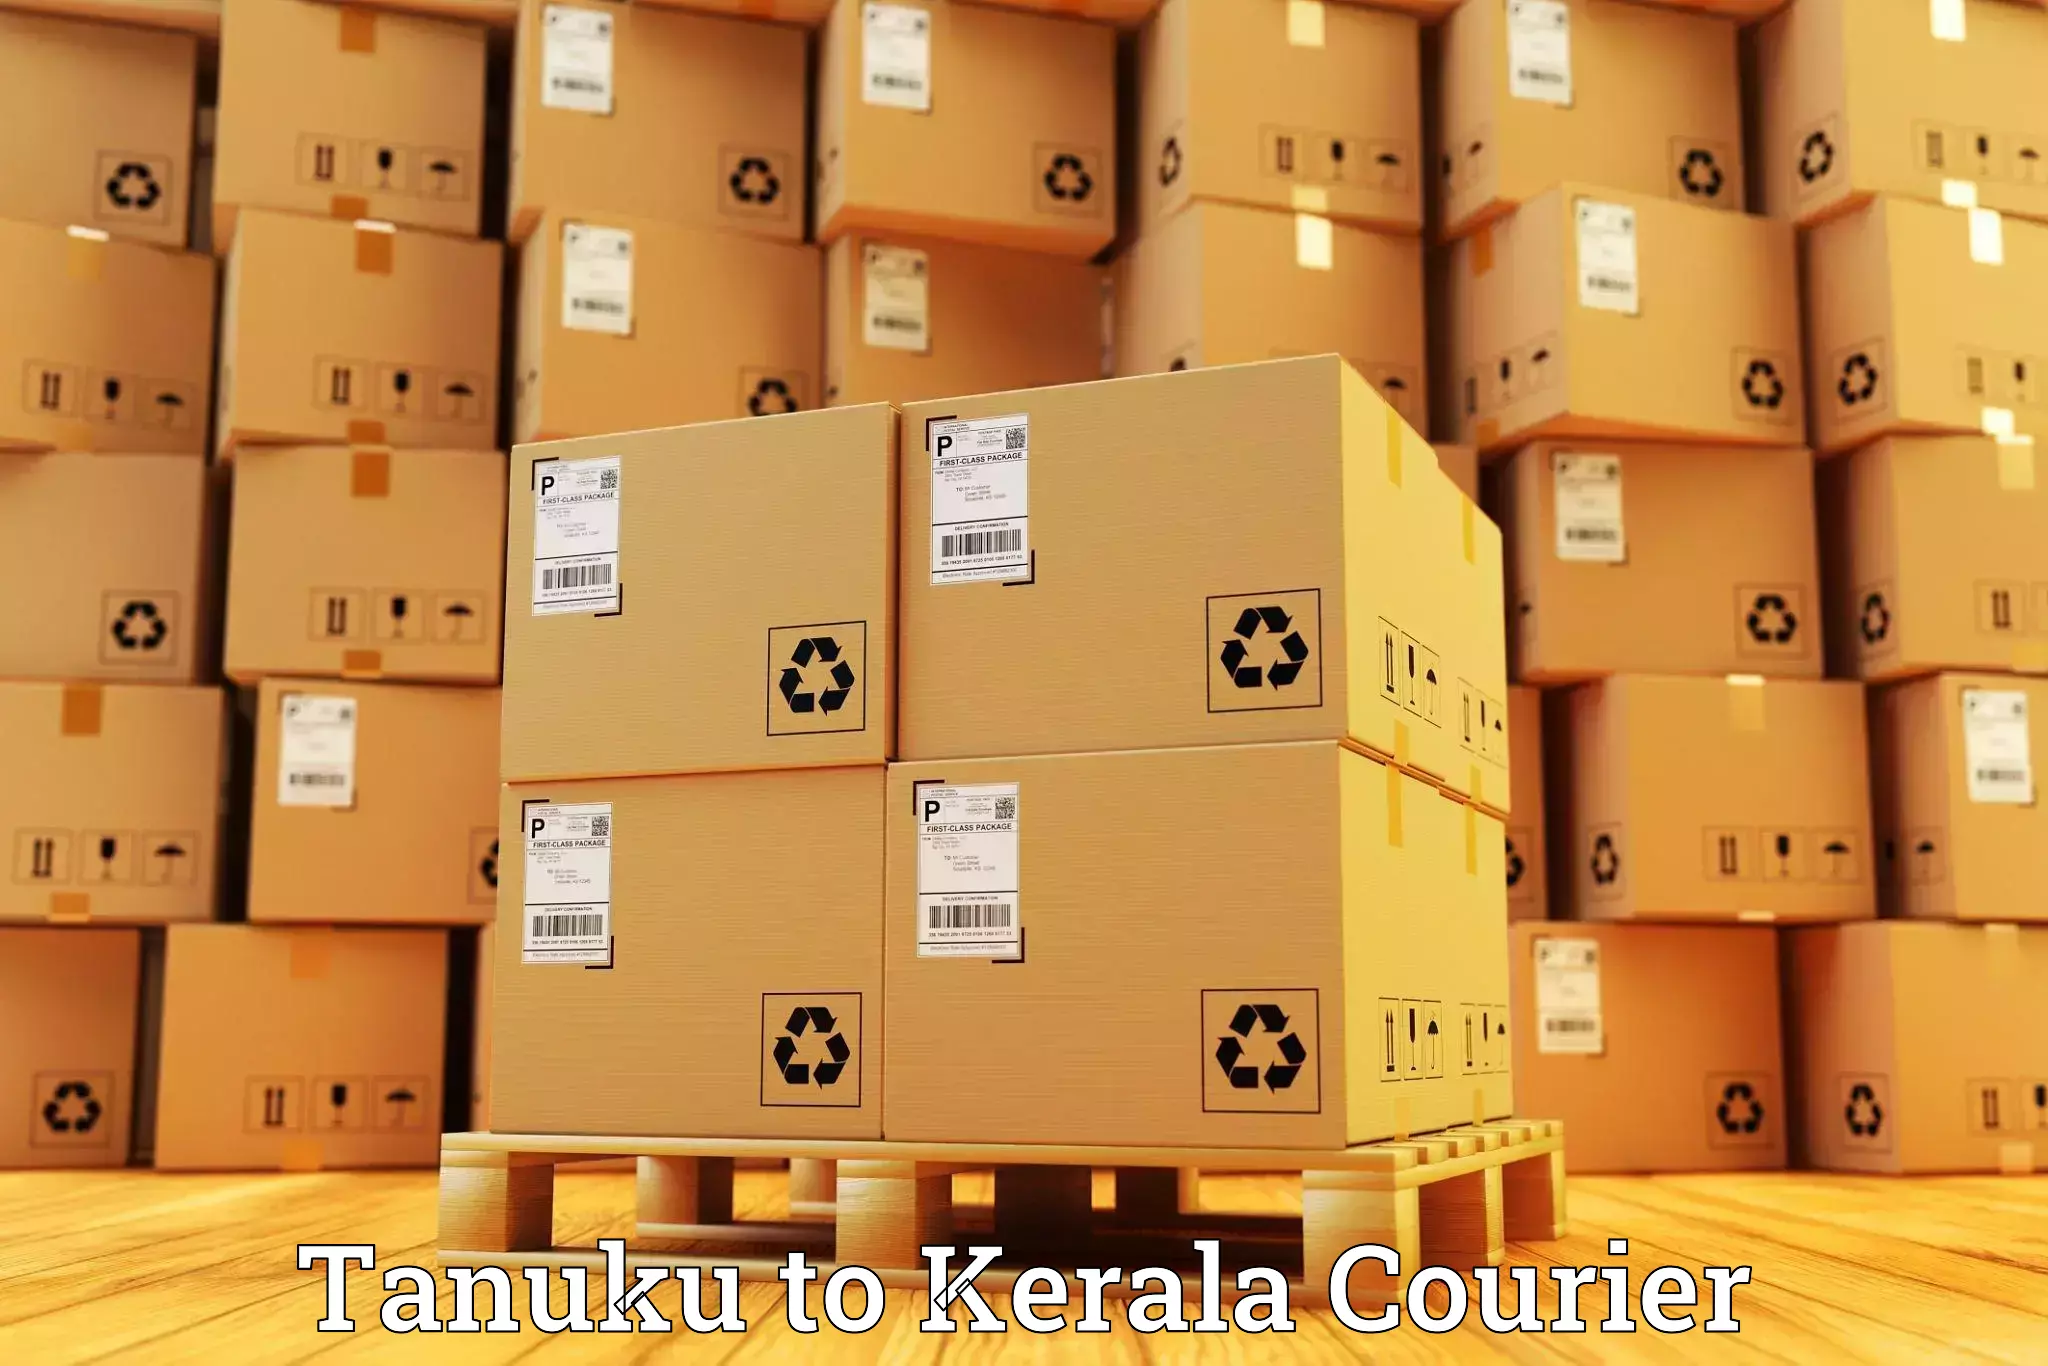 Same day luggage service Tanuku to Kerala